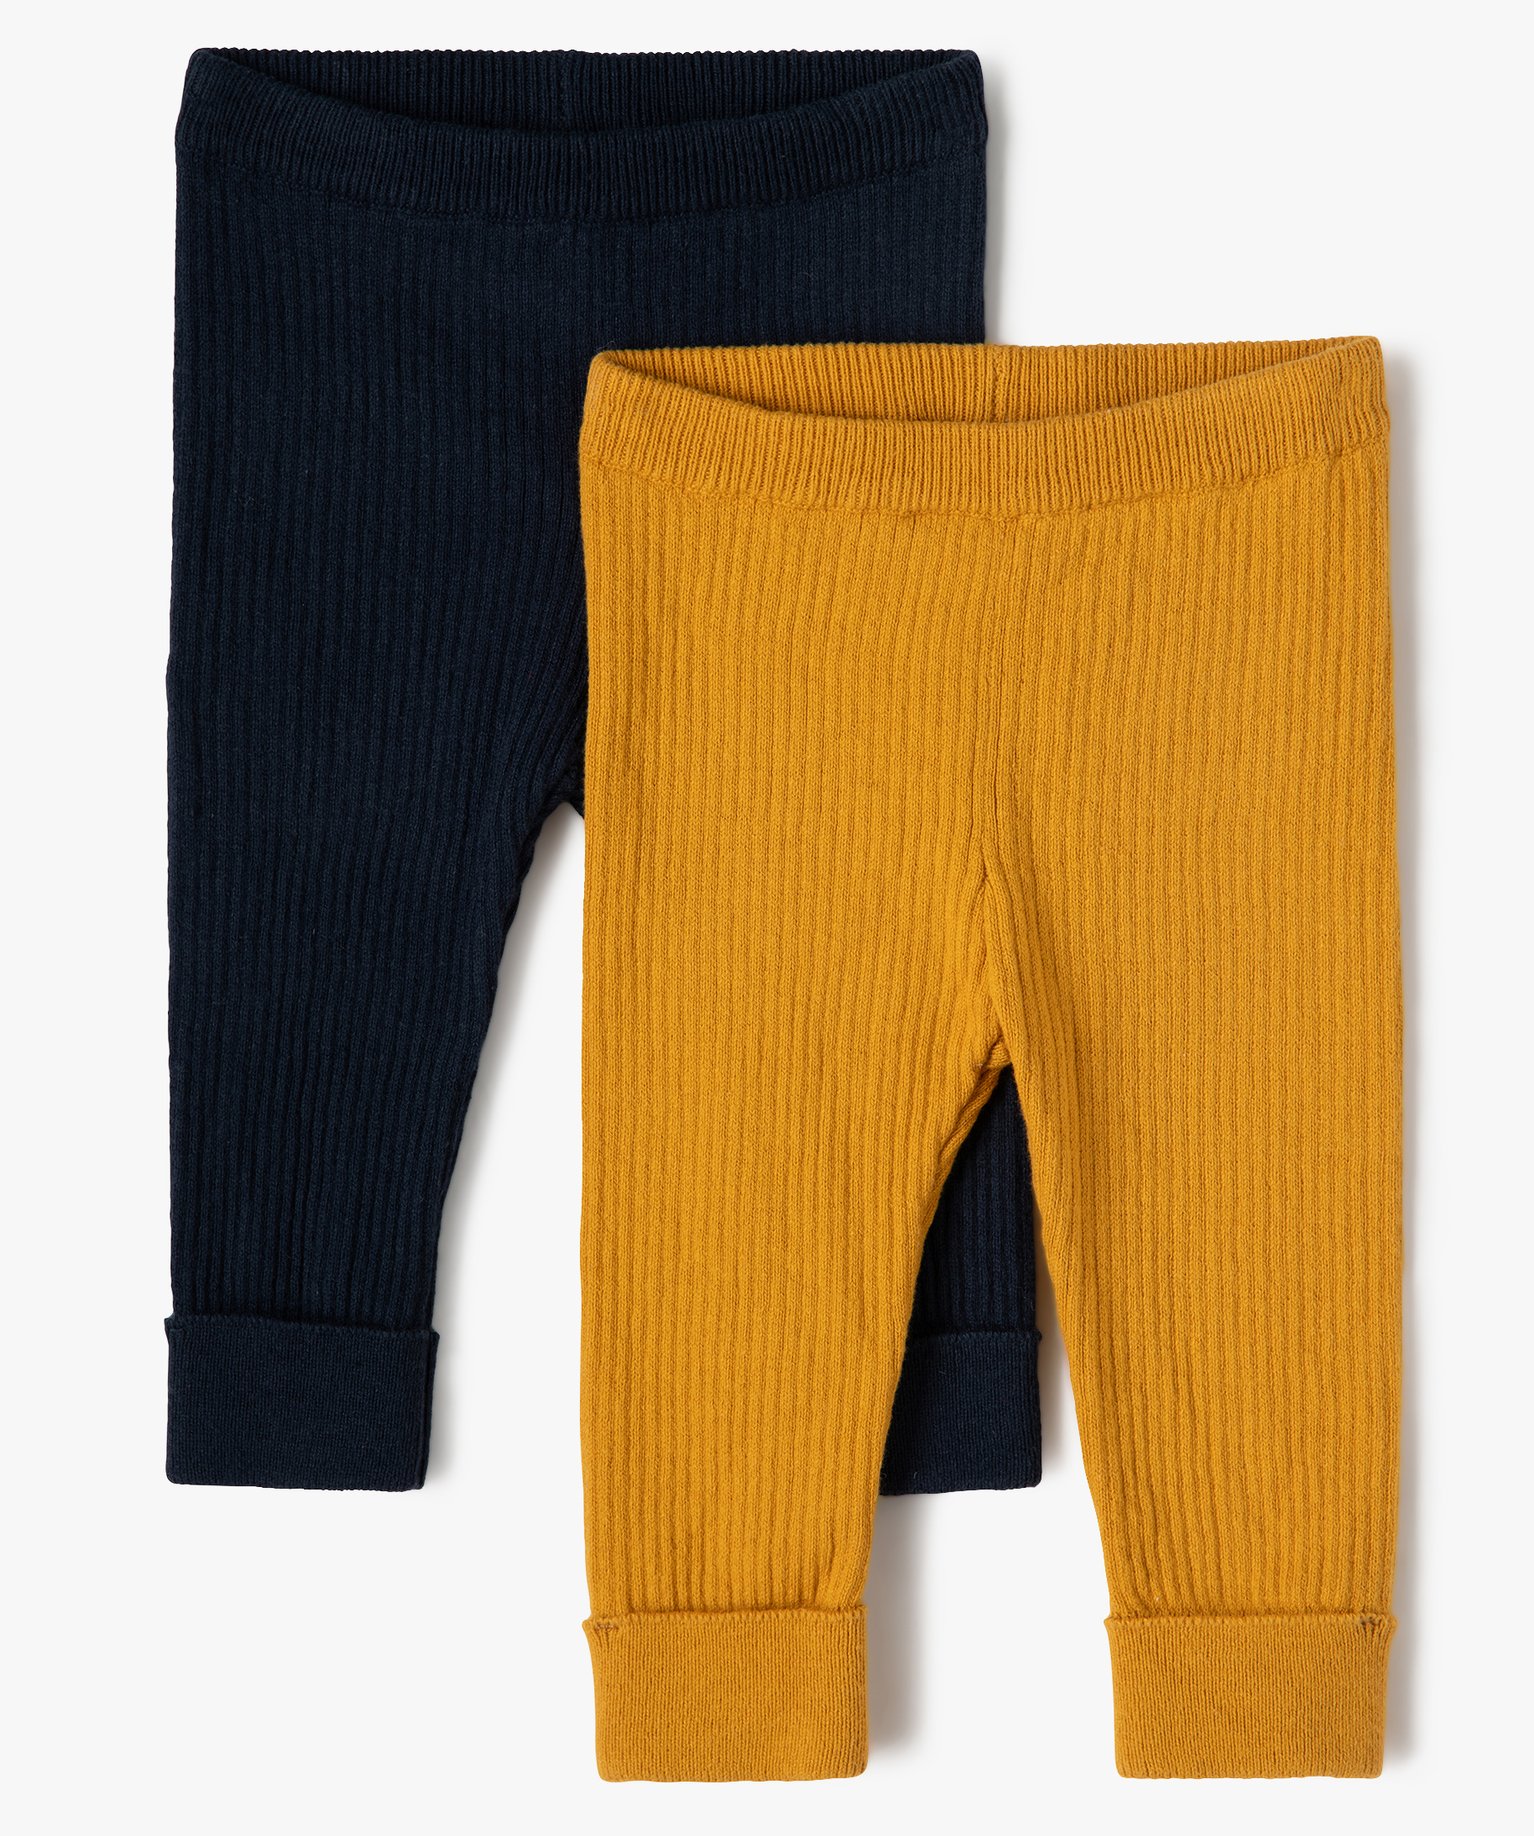 Pantalon bébé en maille côtelée (lot de 2) - 0M - jaune - GEMO